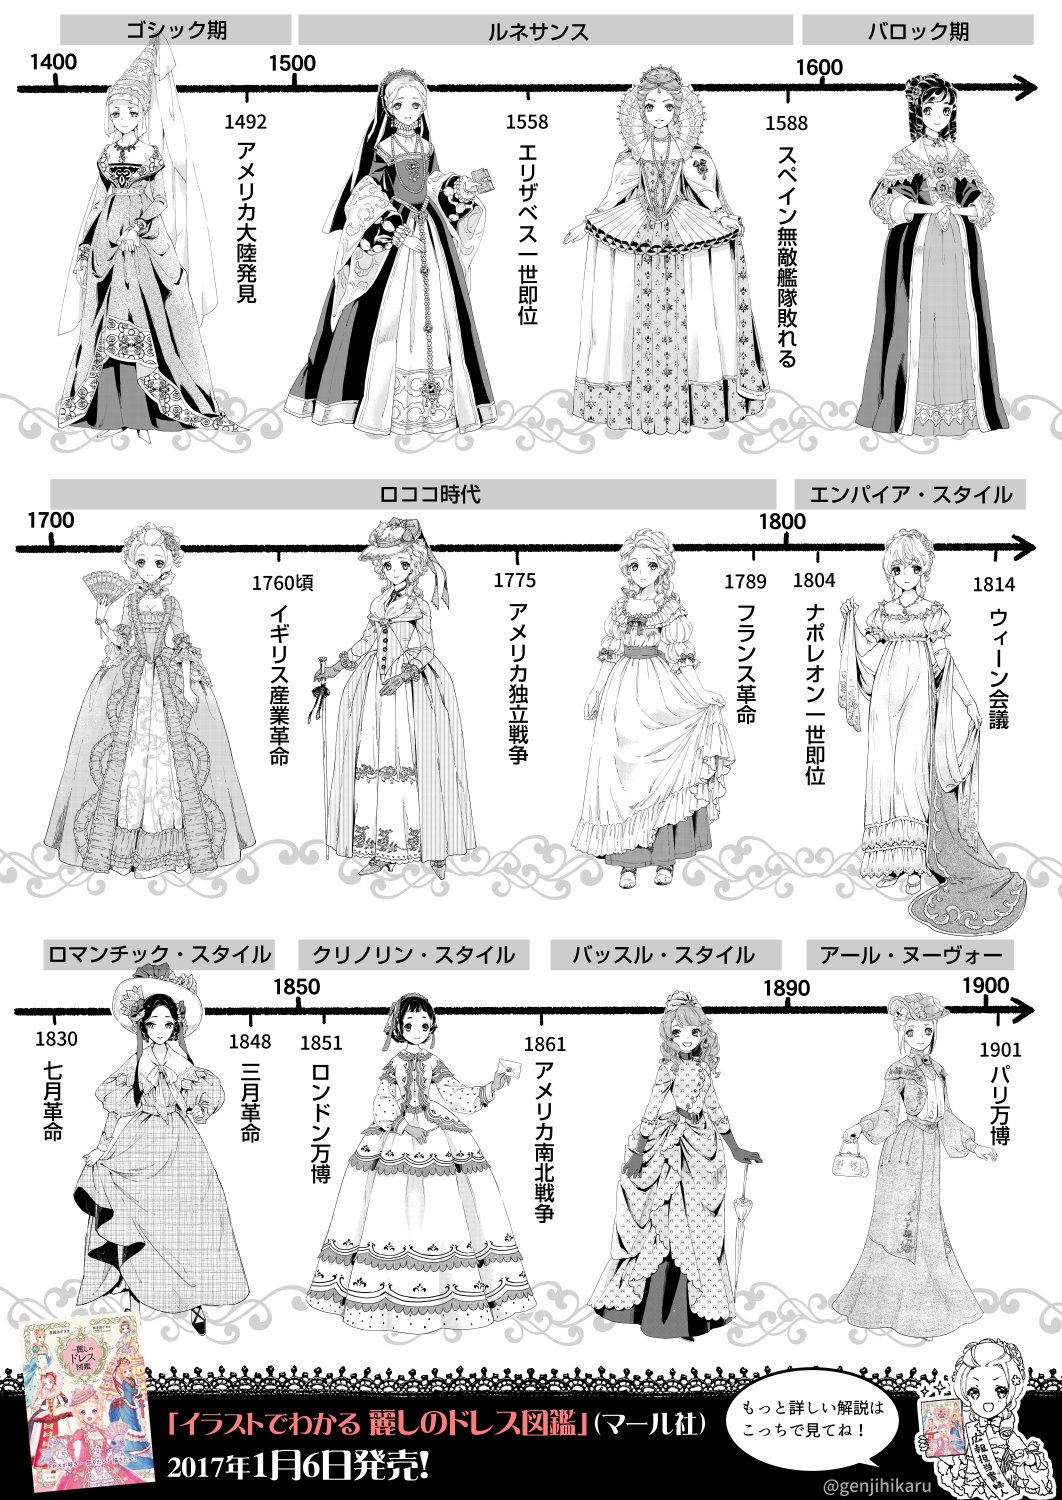 花園あずき ドレスの歴史まとめてみた だいぶざっくり 今まで描いたドレスのイラストで 知っておくとちょっと便利なドレス の歴史をまとめてみました どの時代のドレスも個性的でステキです T Co C01uzpt2cs Twitter